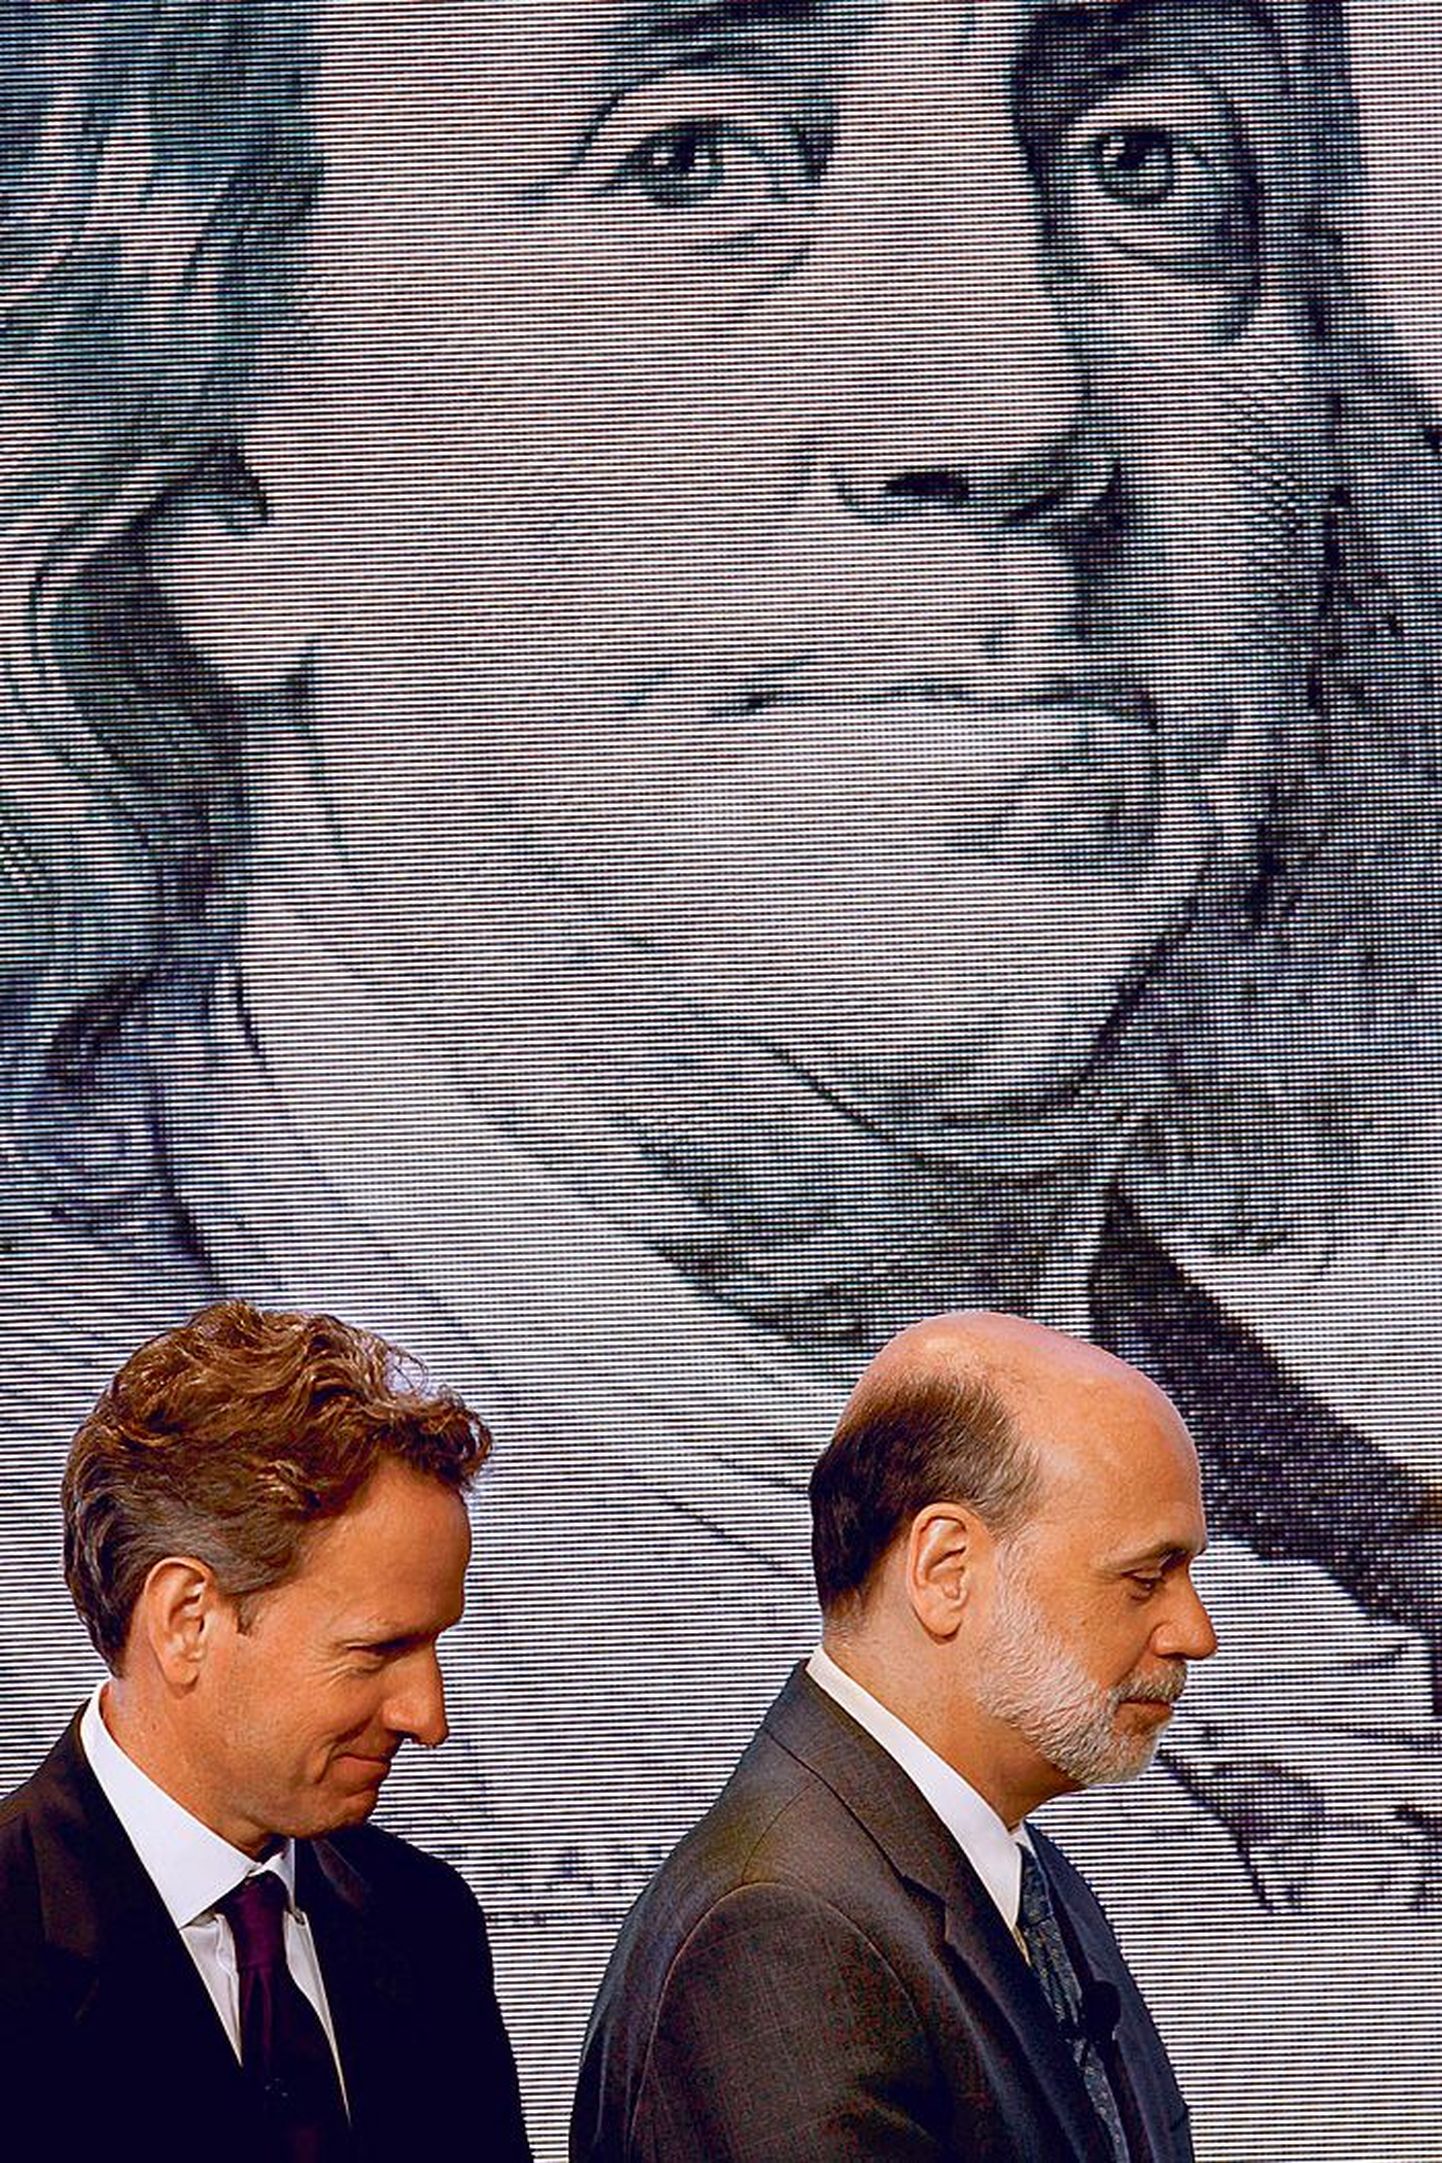 Pildil tutvustavad USA rahandusminister Timothy Geithner (vasakul) ja Föderaalreservi juht Ben Bernanke uut sajadollarilist rahatähte, mis tuleb käibele tuleva aasta veebruaris.